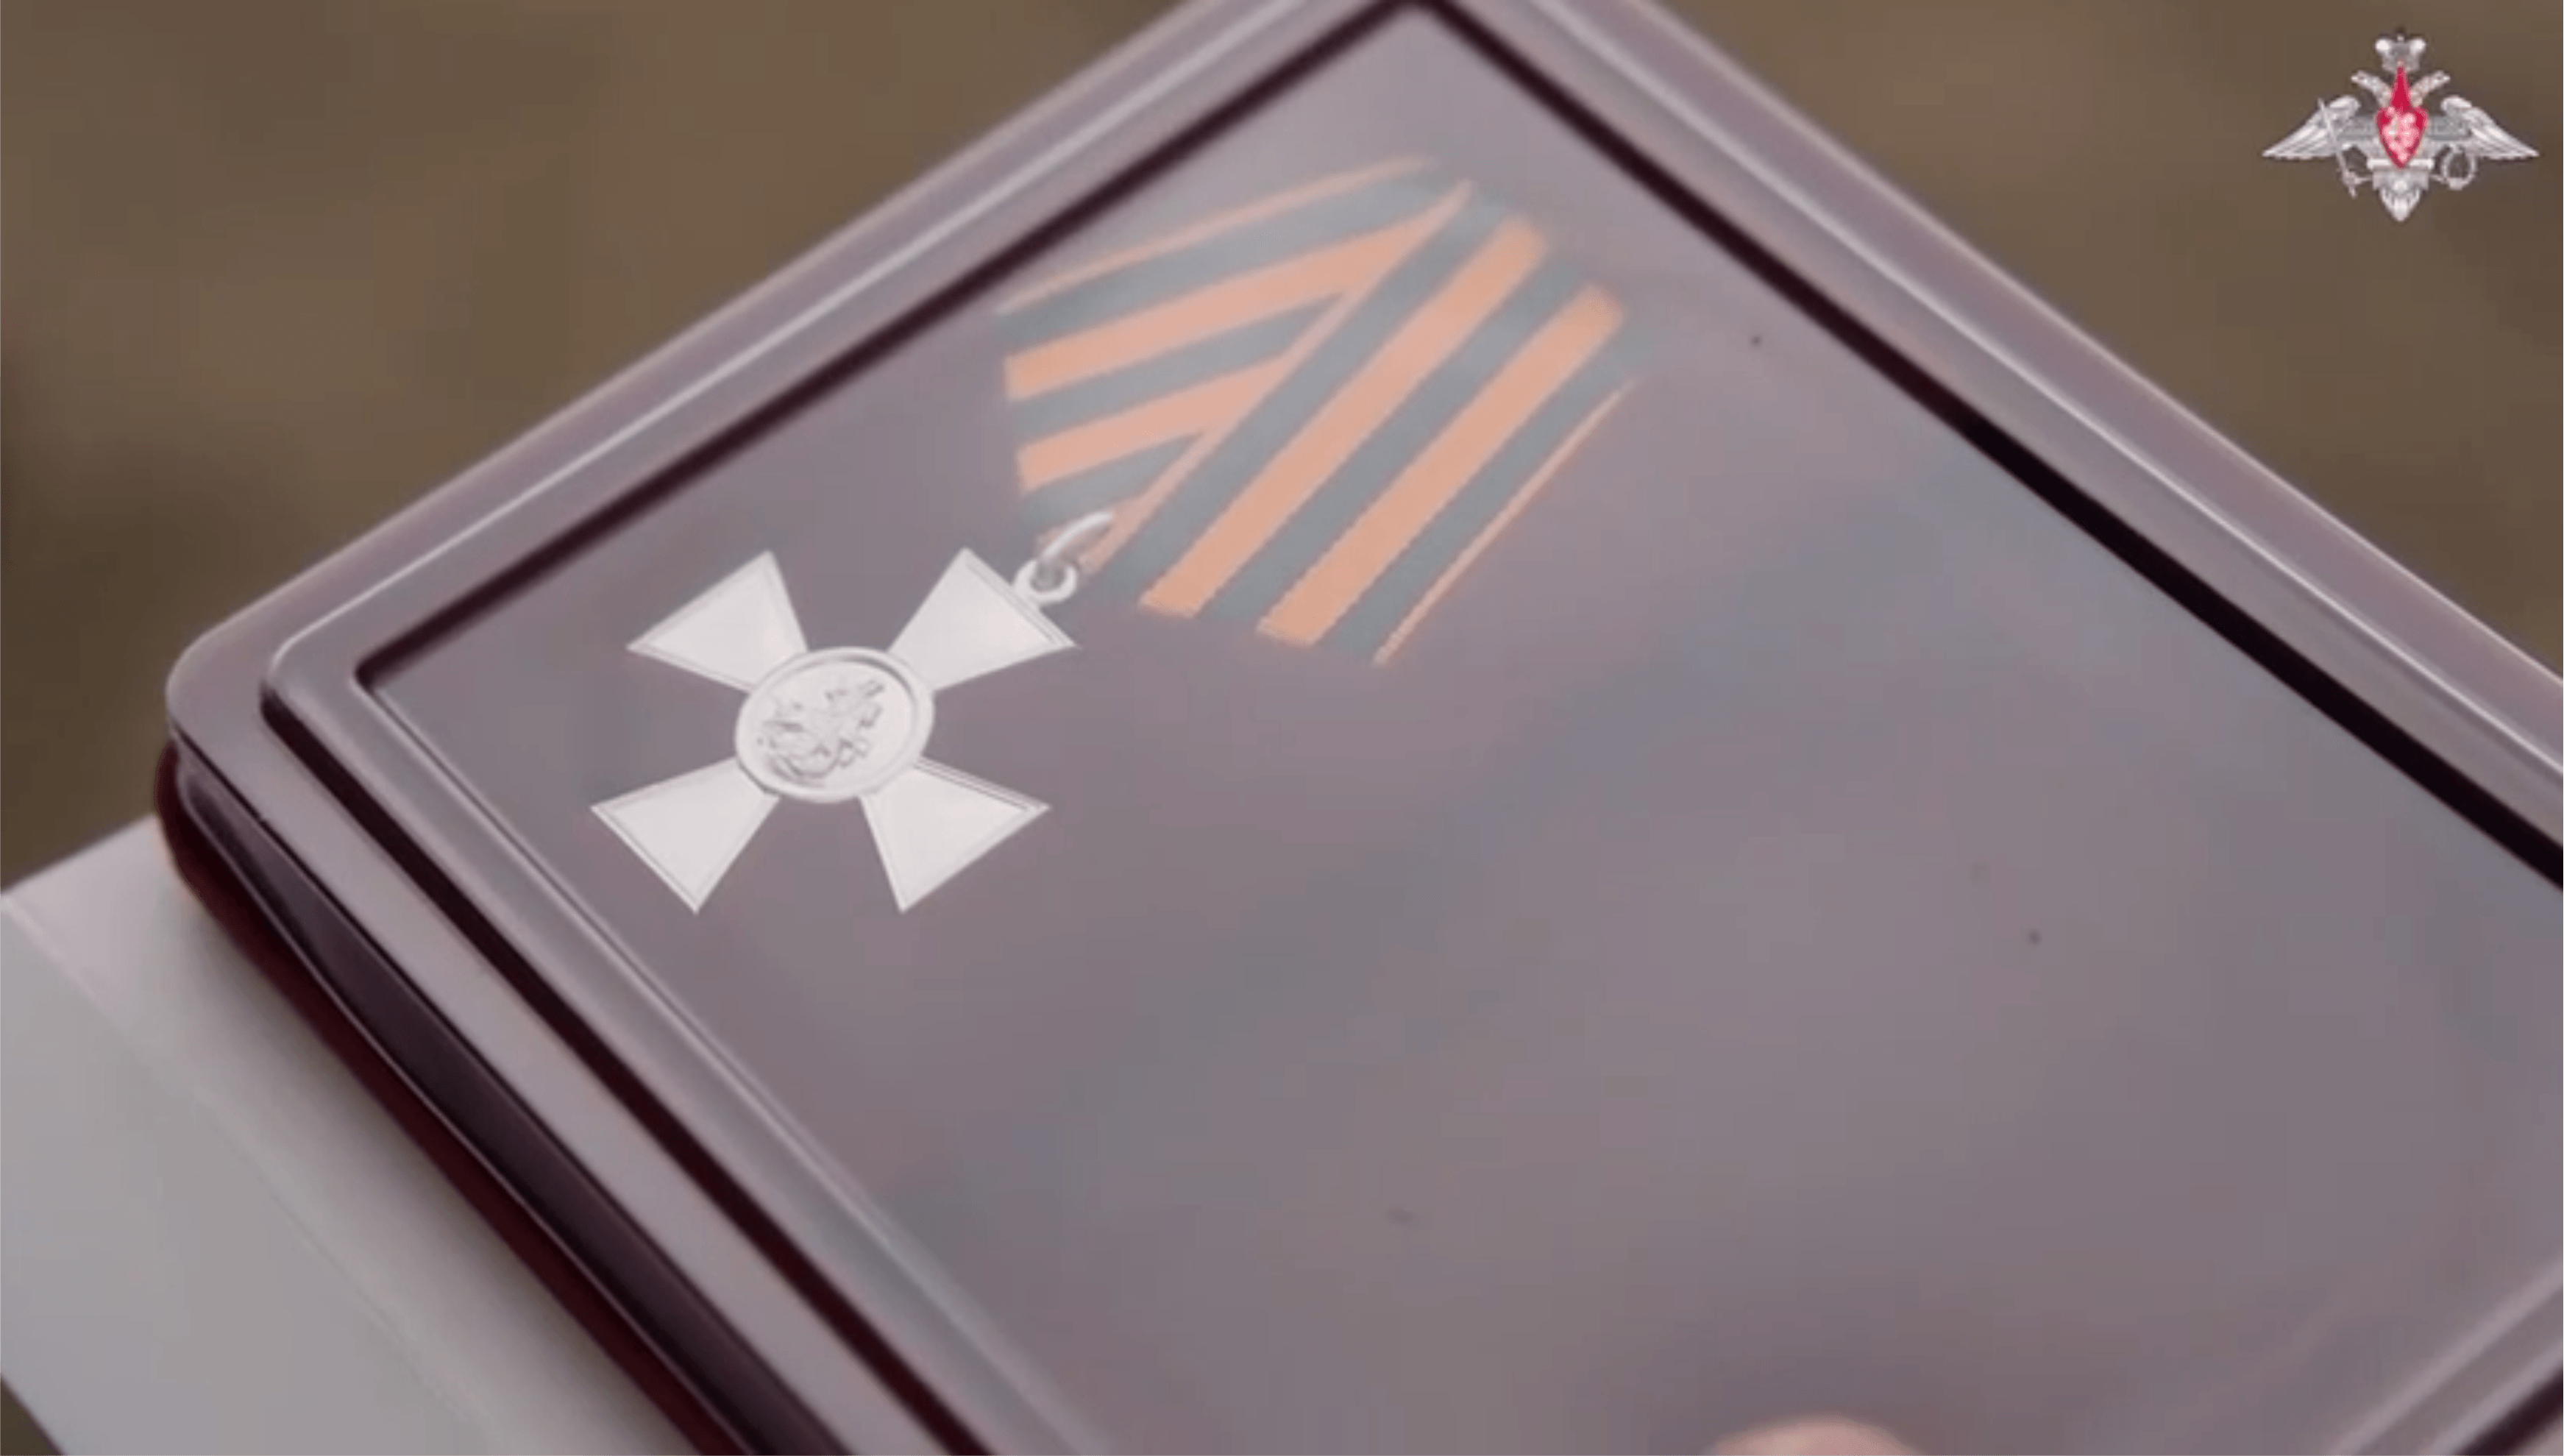 Боец из Югры получил медаль «За отвагу»!